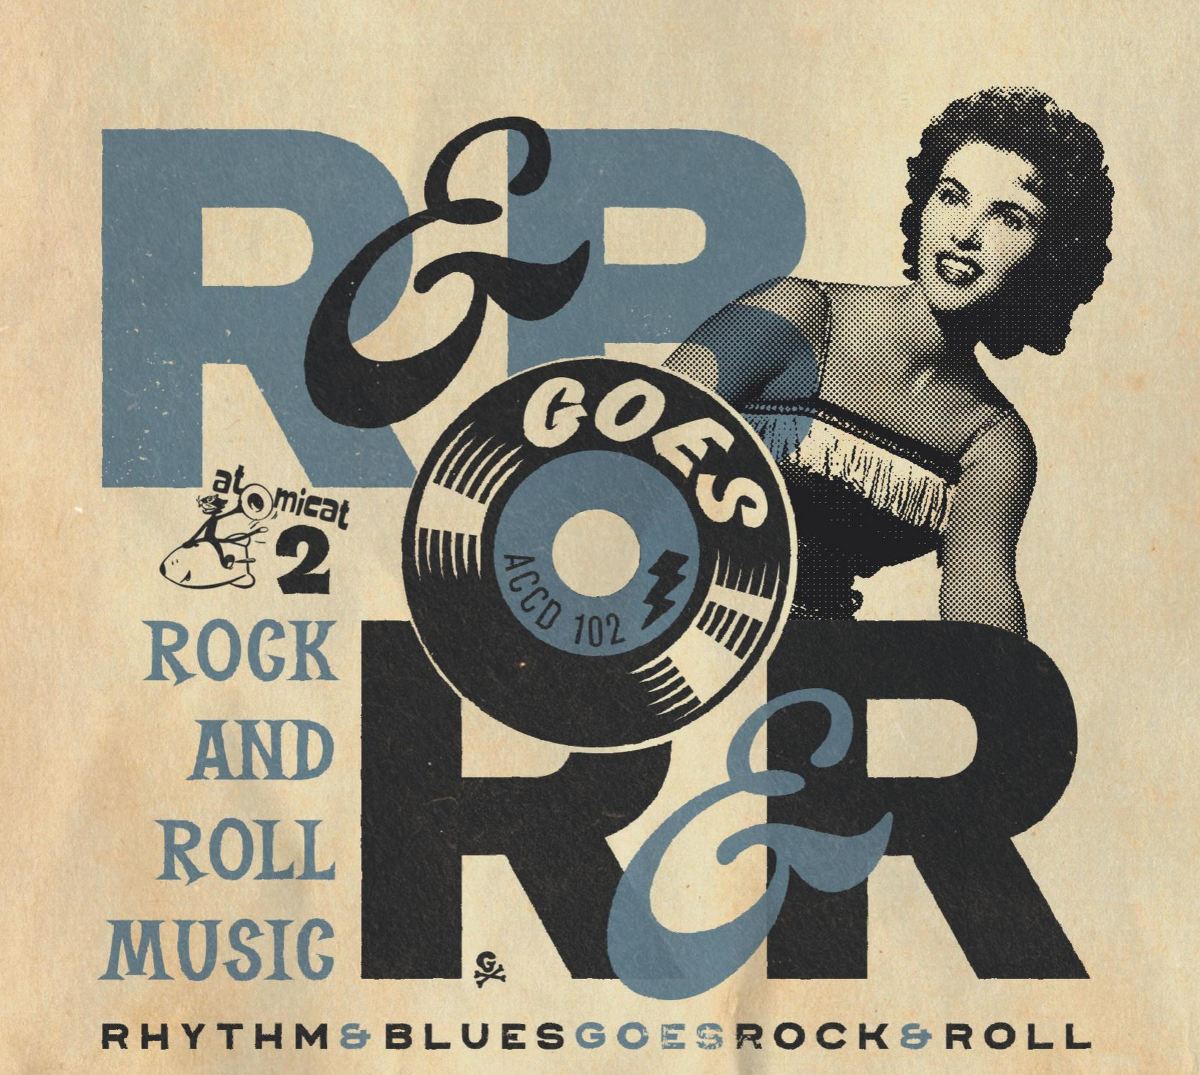 Rhythm & Blues Goes Rock & Roll 2 front